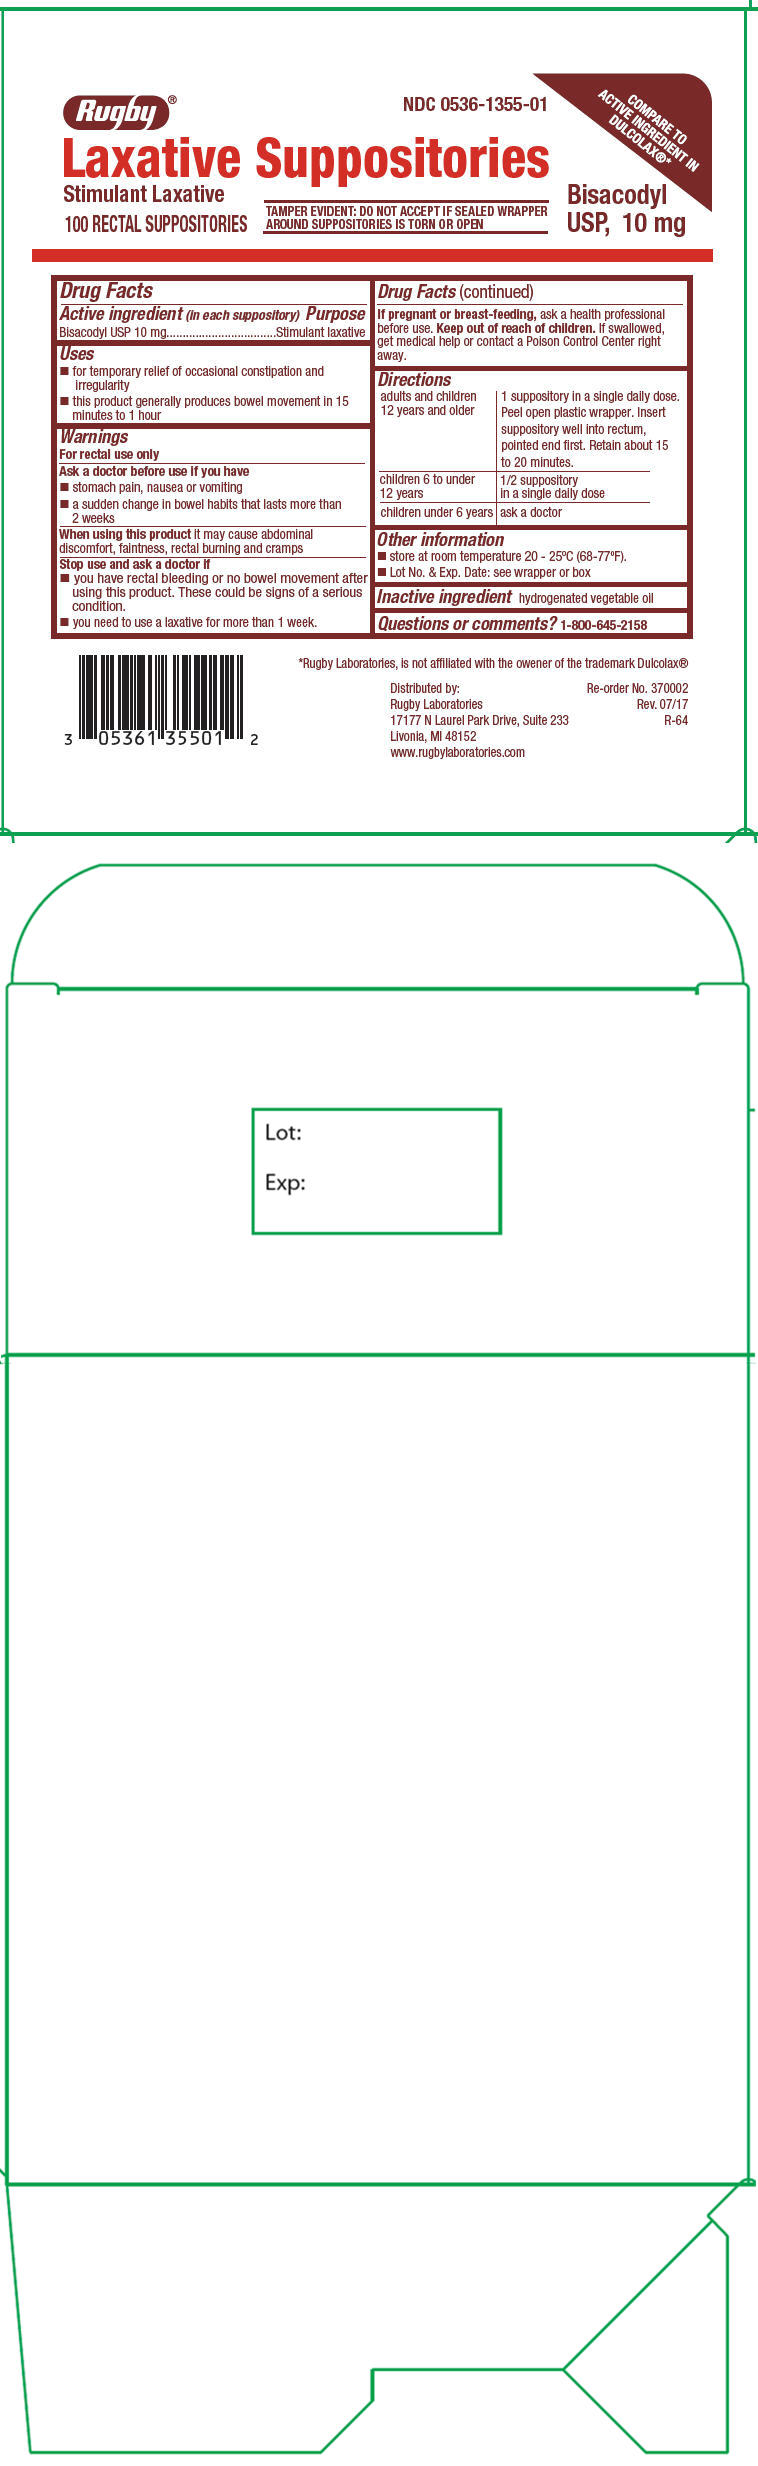 Principal Display Panel - 10 mg Suppository Carton